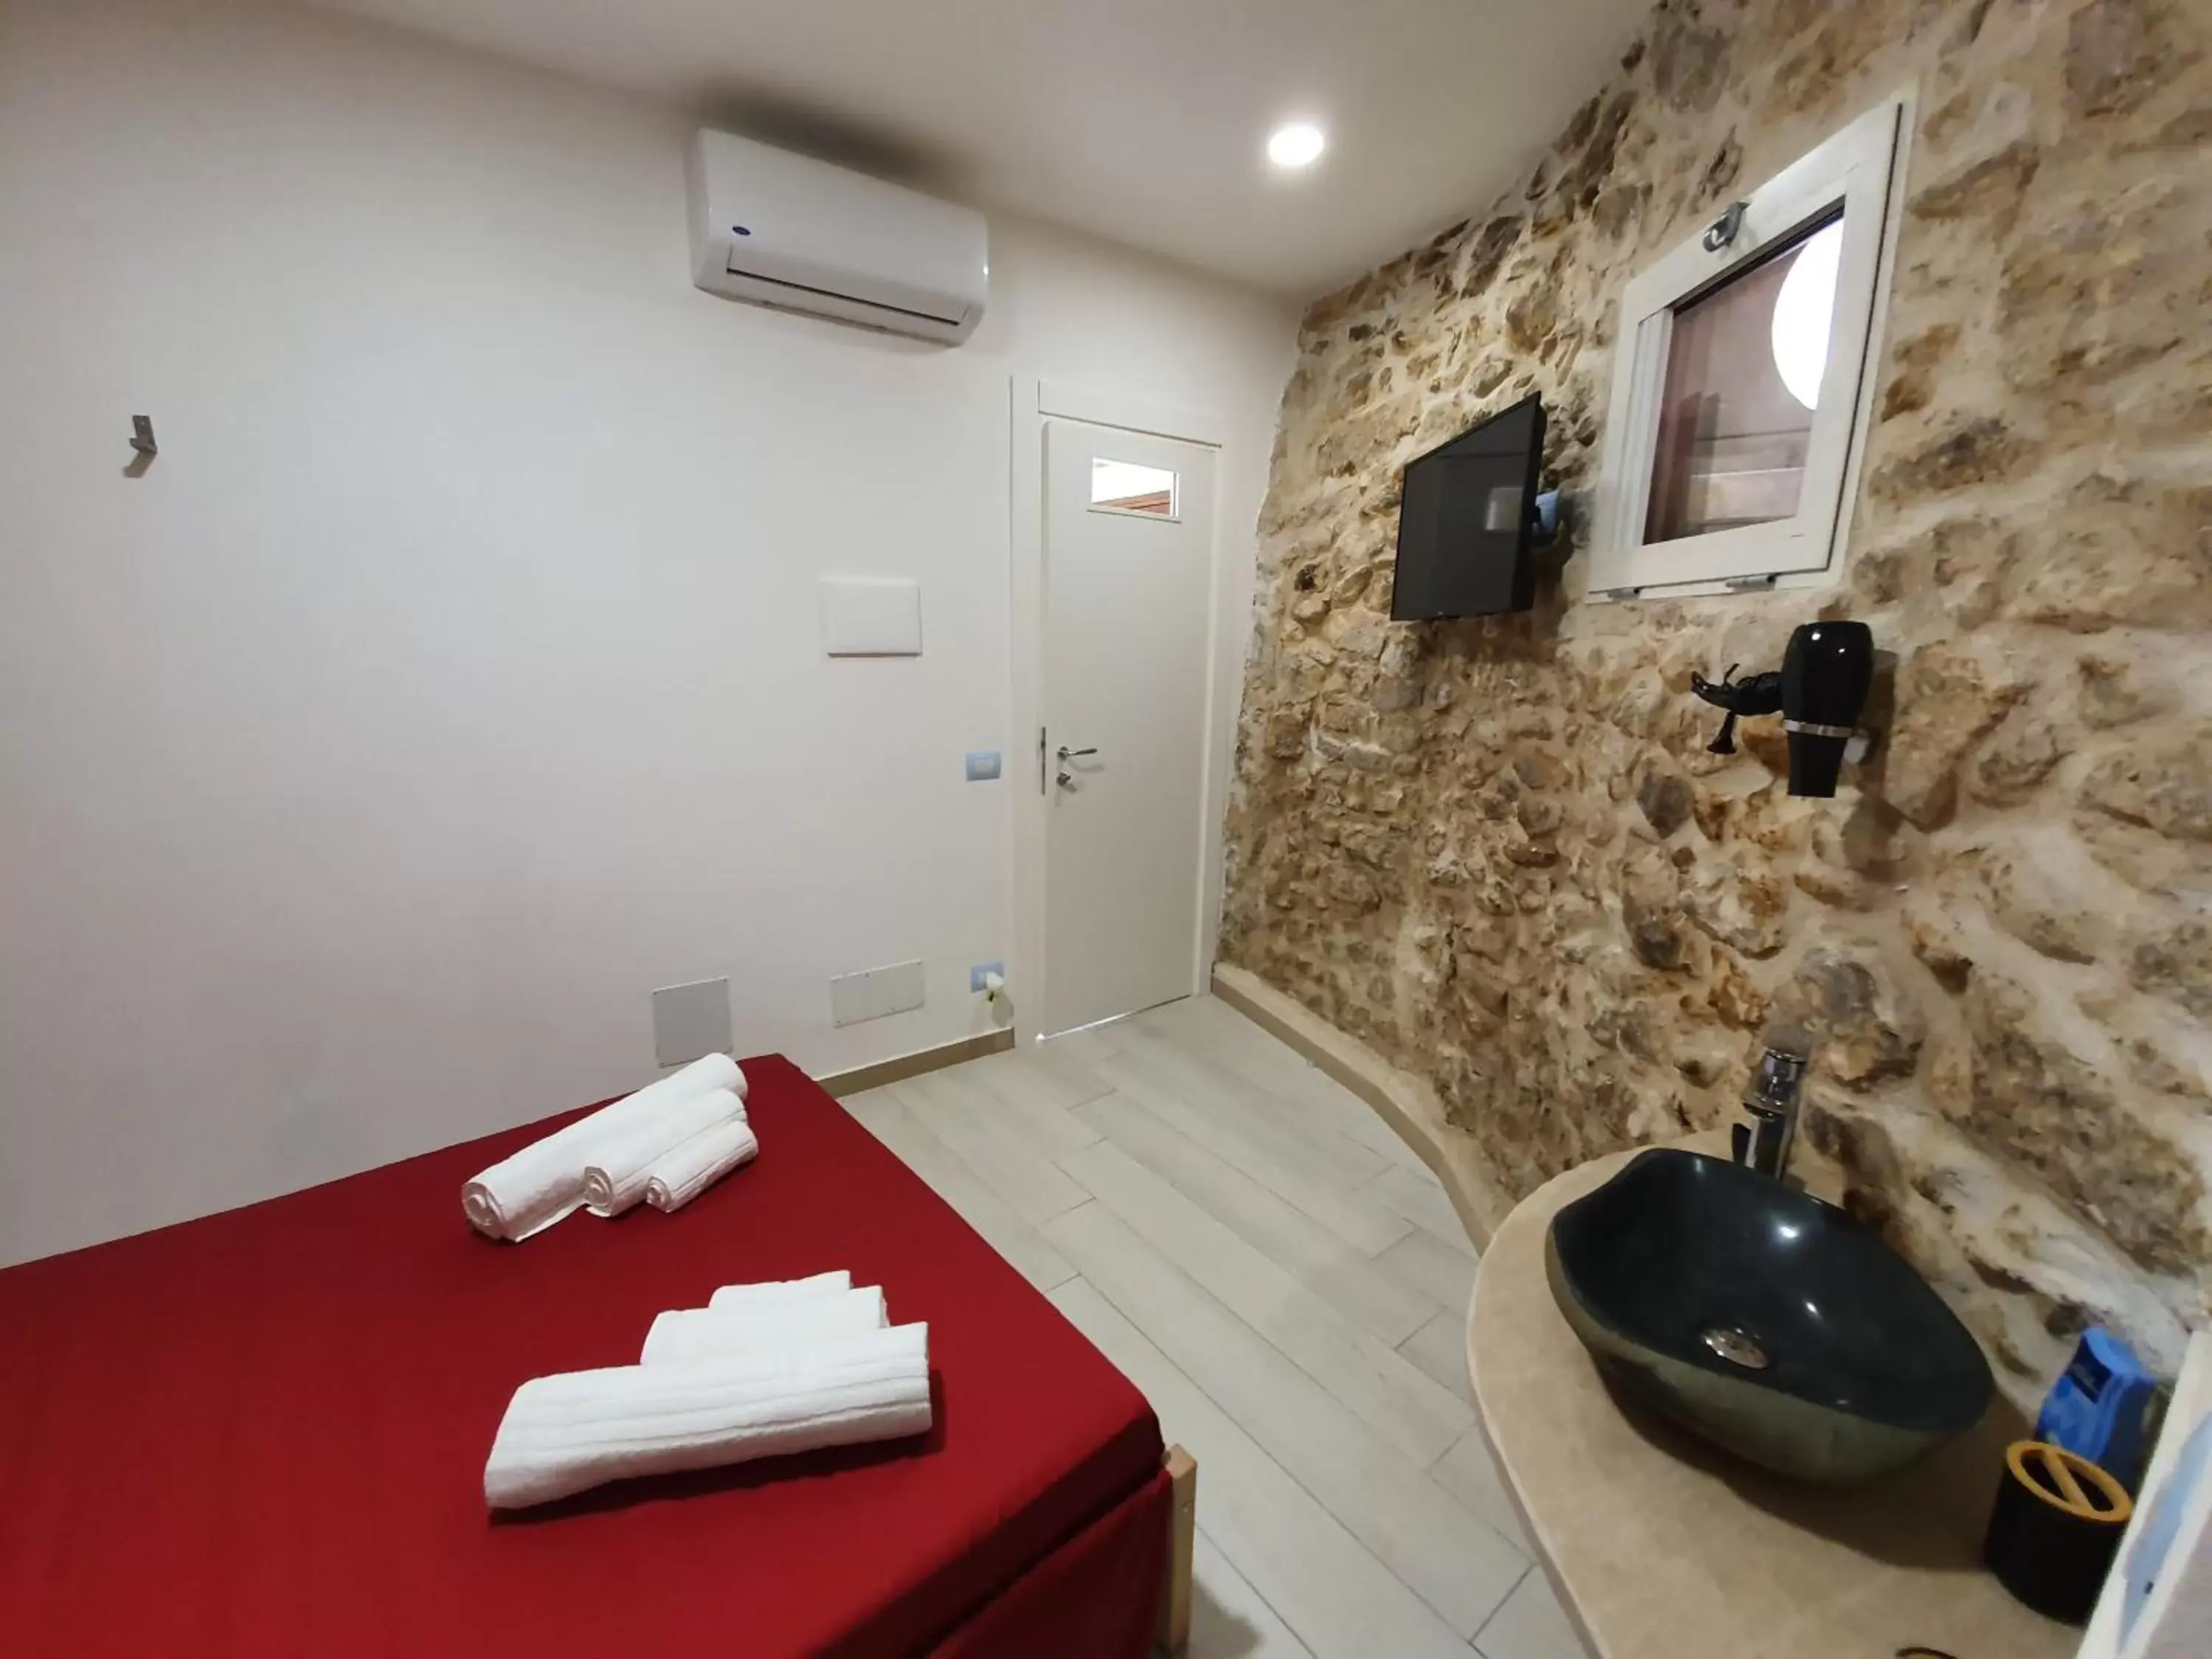 Bedroom, Bathroom in Il Daviduccio ibla